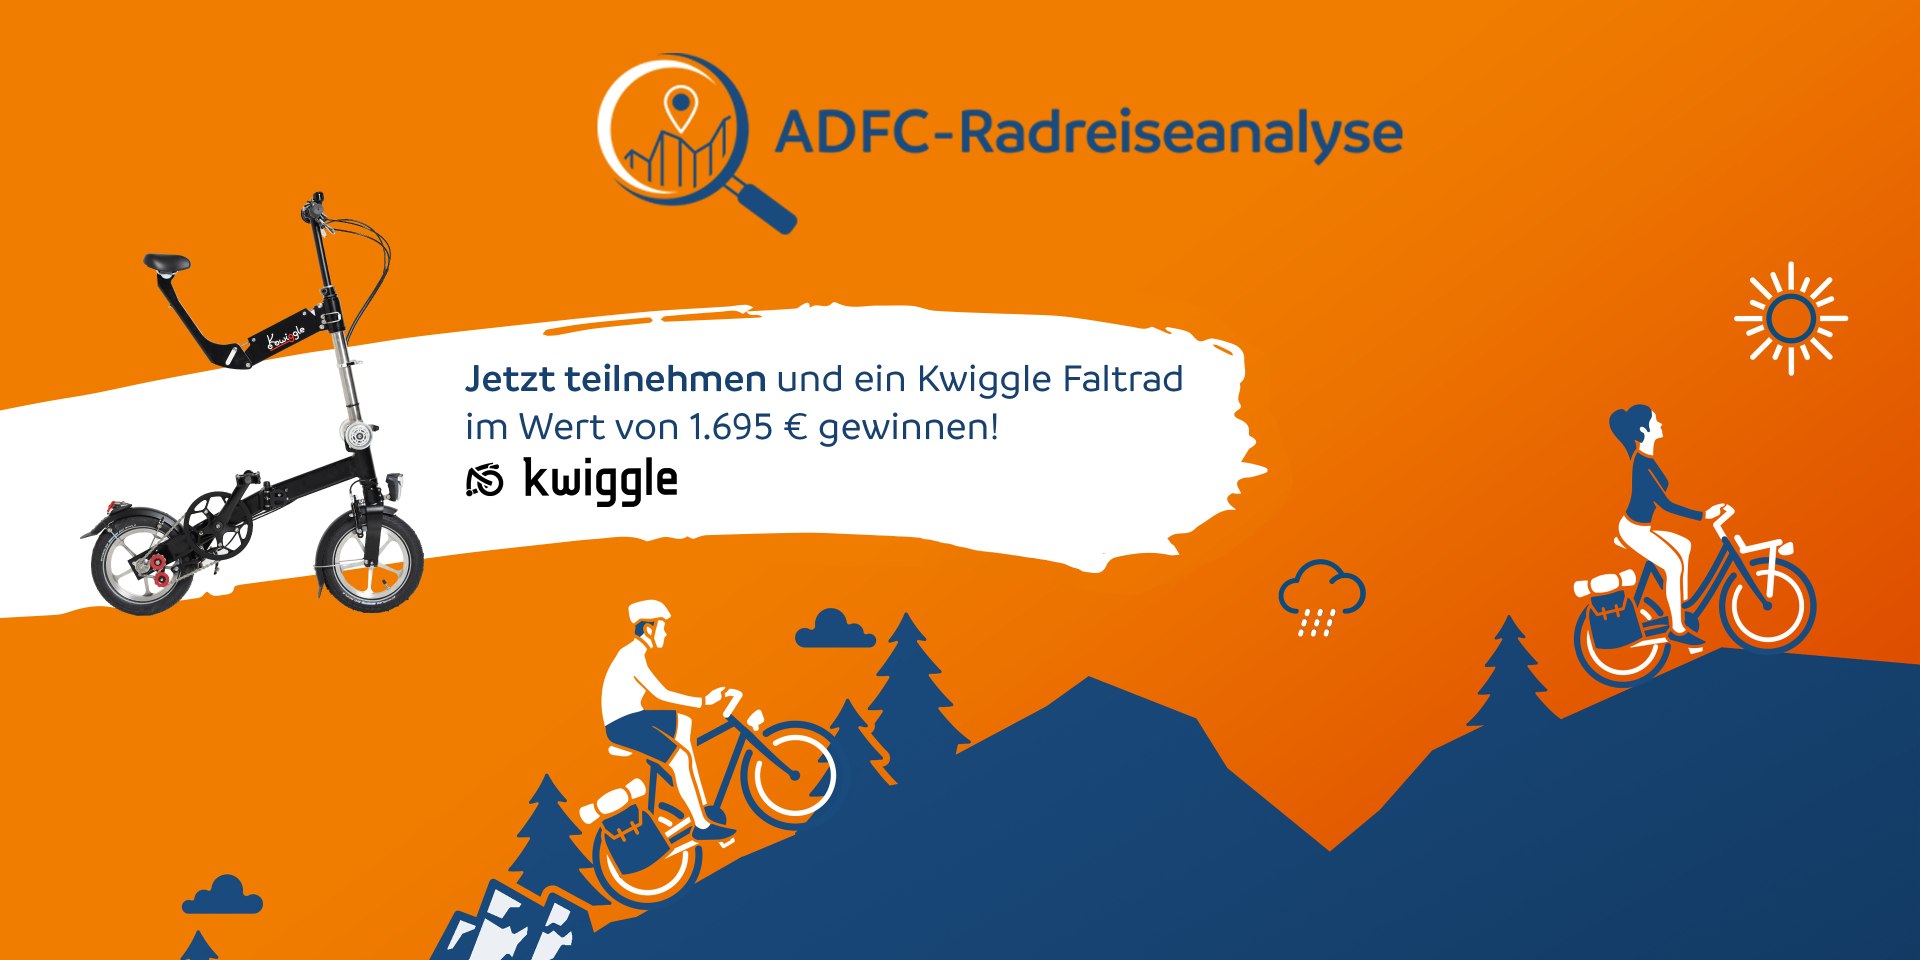 ADFC-Radreiseanalyse, © ADFC